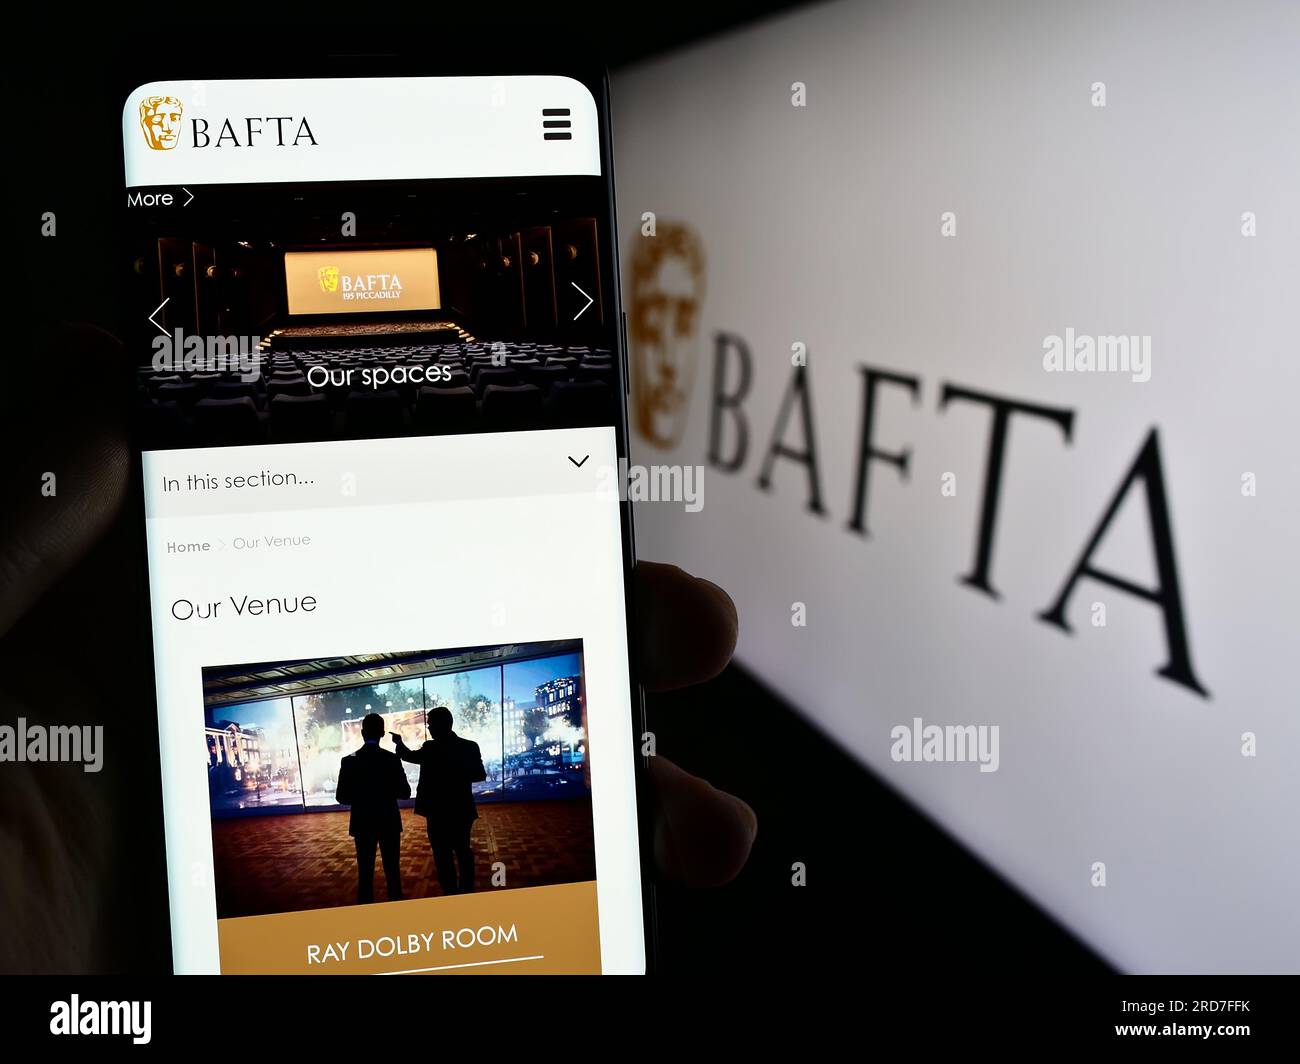 Persona che possiede uno smartphone con una pagina Web dei British Academy Film Awards (BAFTA) sullo schermo davanti al logo. Concentrarsi sul centro del display del telefono. Foto Stock